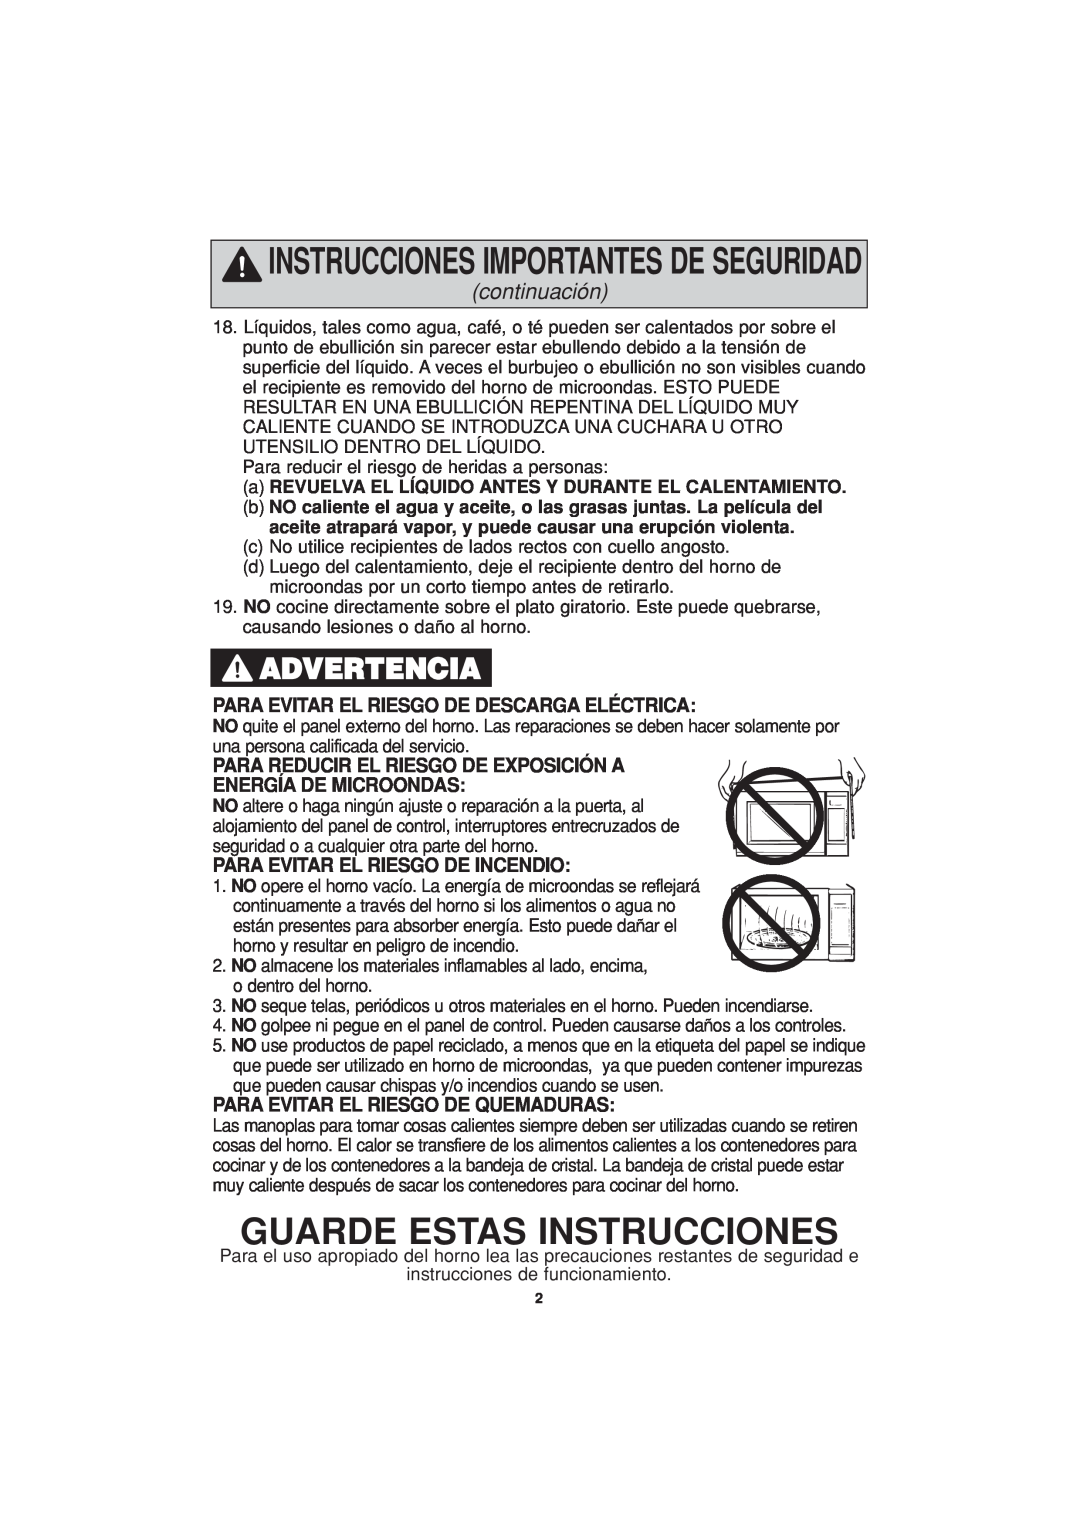 Panasonic NN-T694 Guarde Estas Instrucciones, Advertencia, continuación, Para Evitar El Riesgo De Descarga Eléctrica 